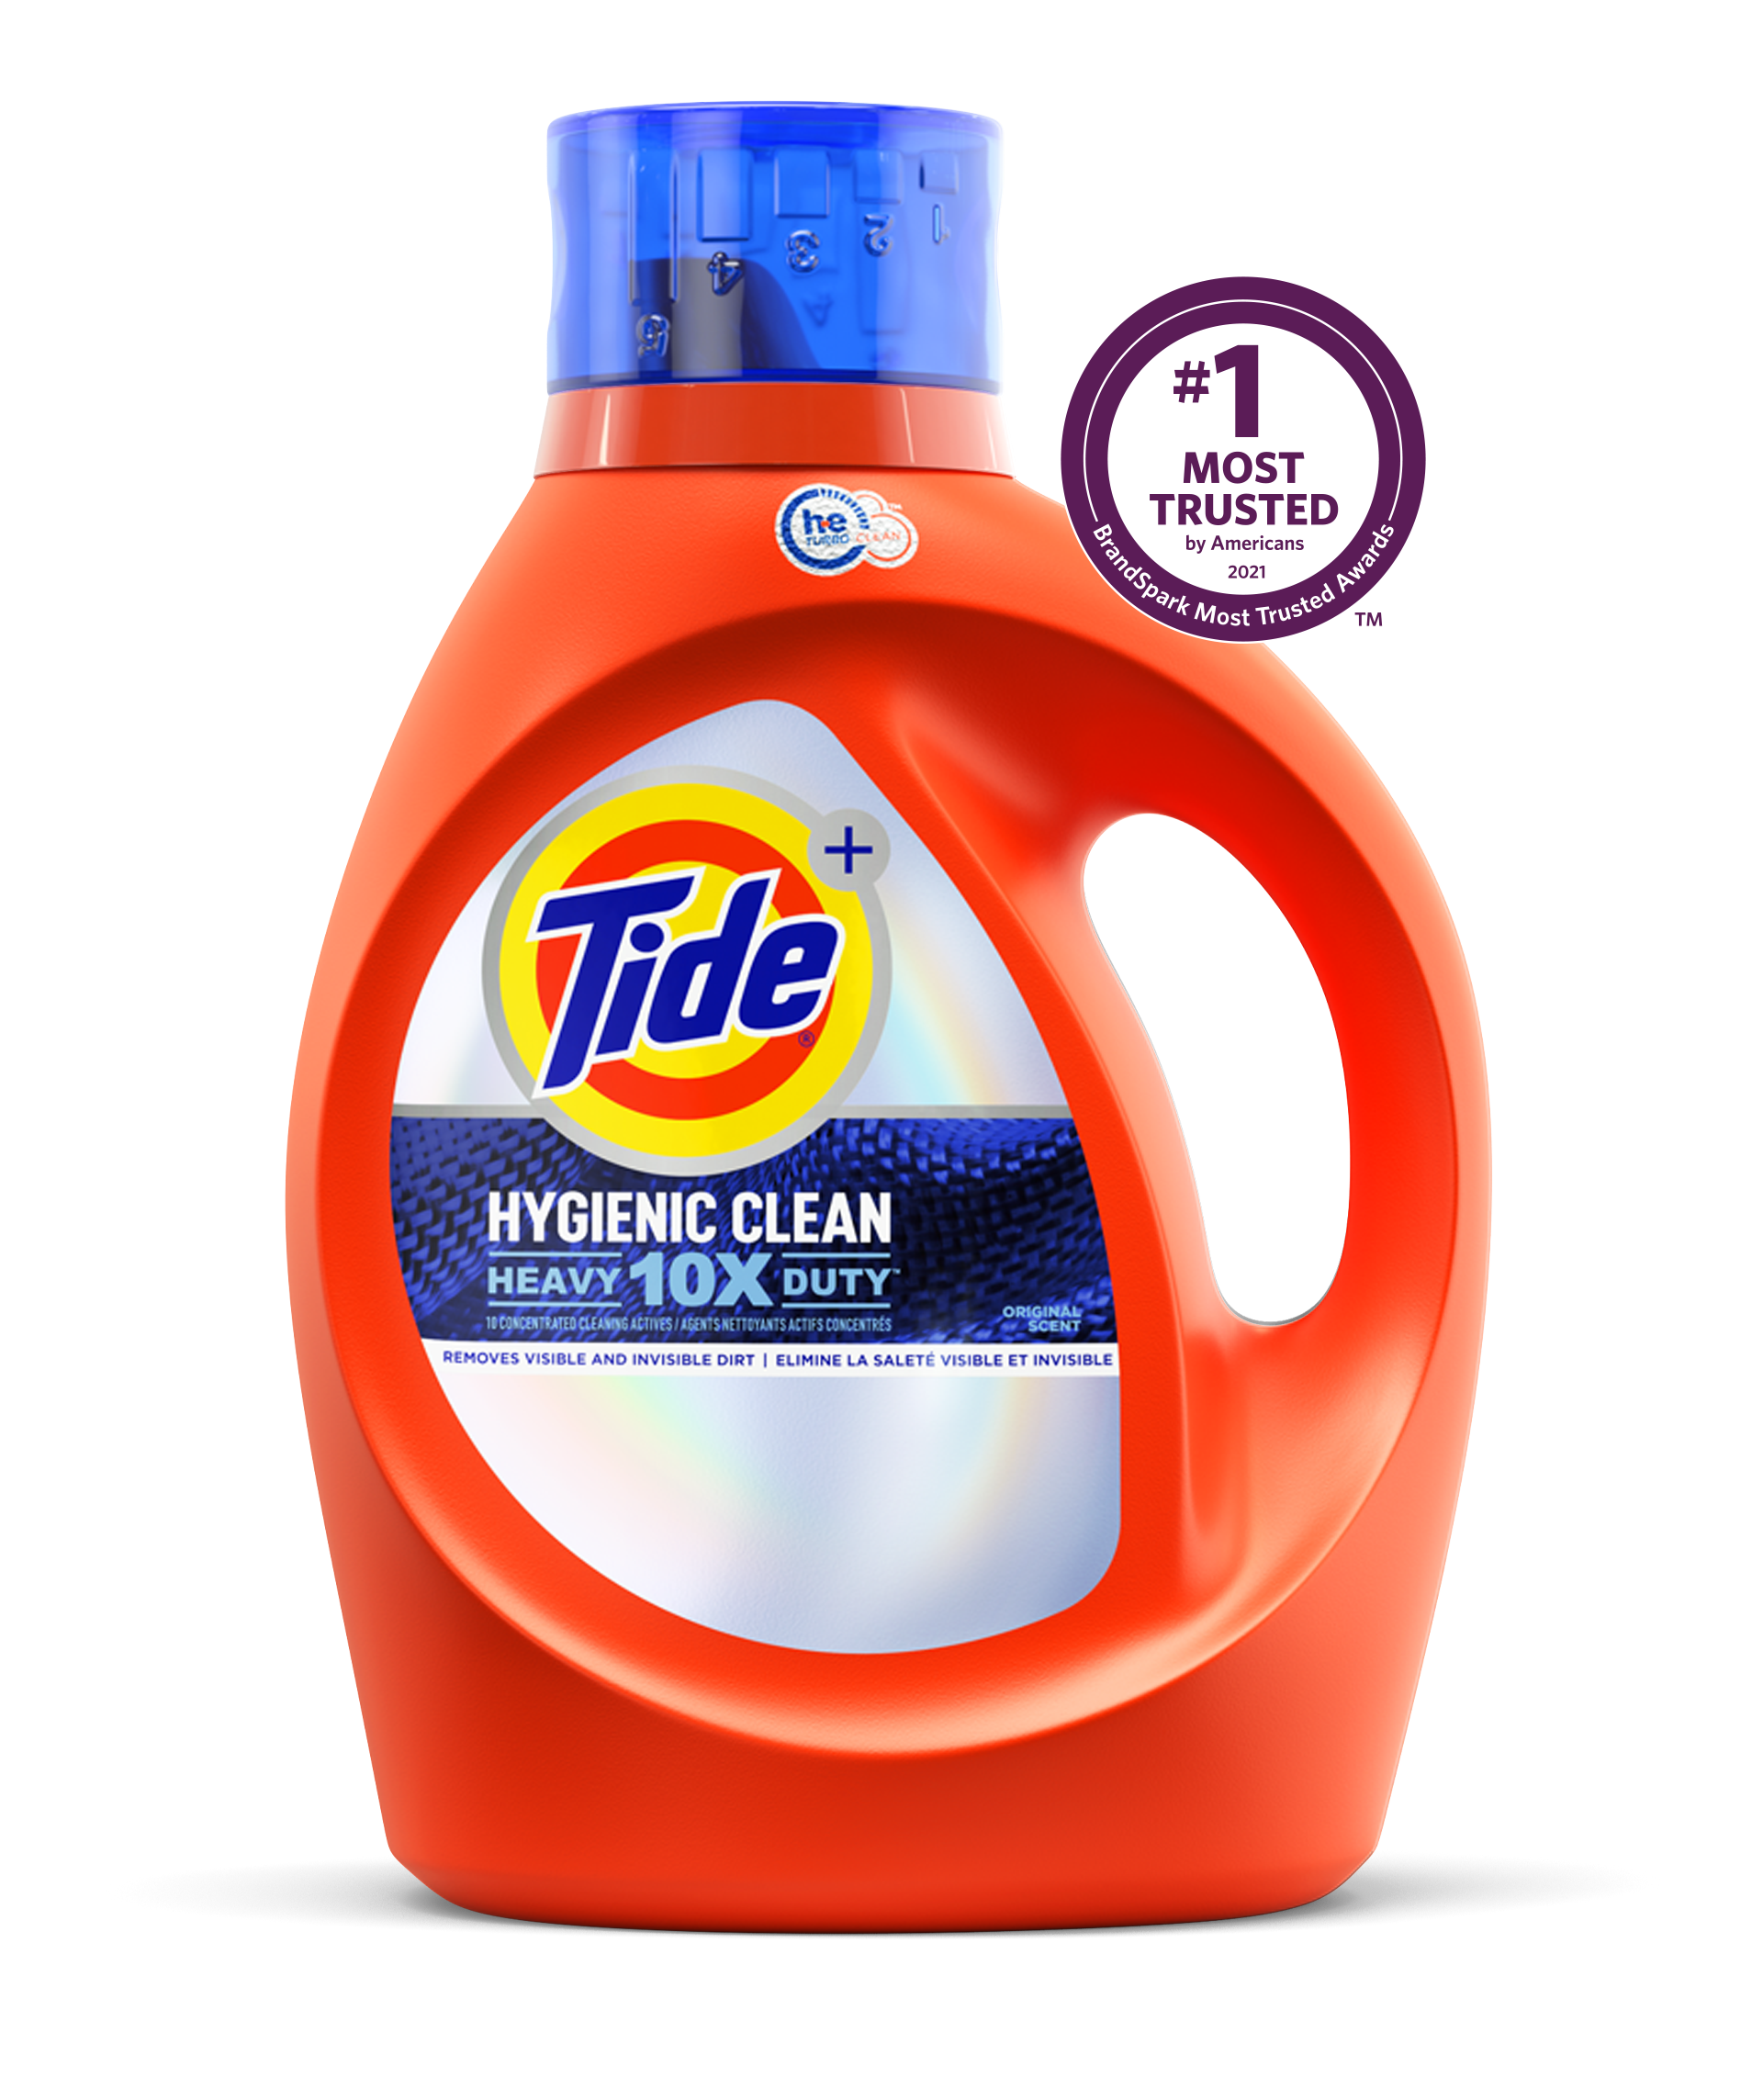 Tide Hygienic Clean Heavy Duty 10x Liquid Detergent Original Scent - 92 ounces, color orange